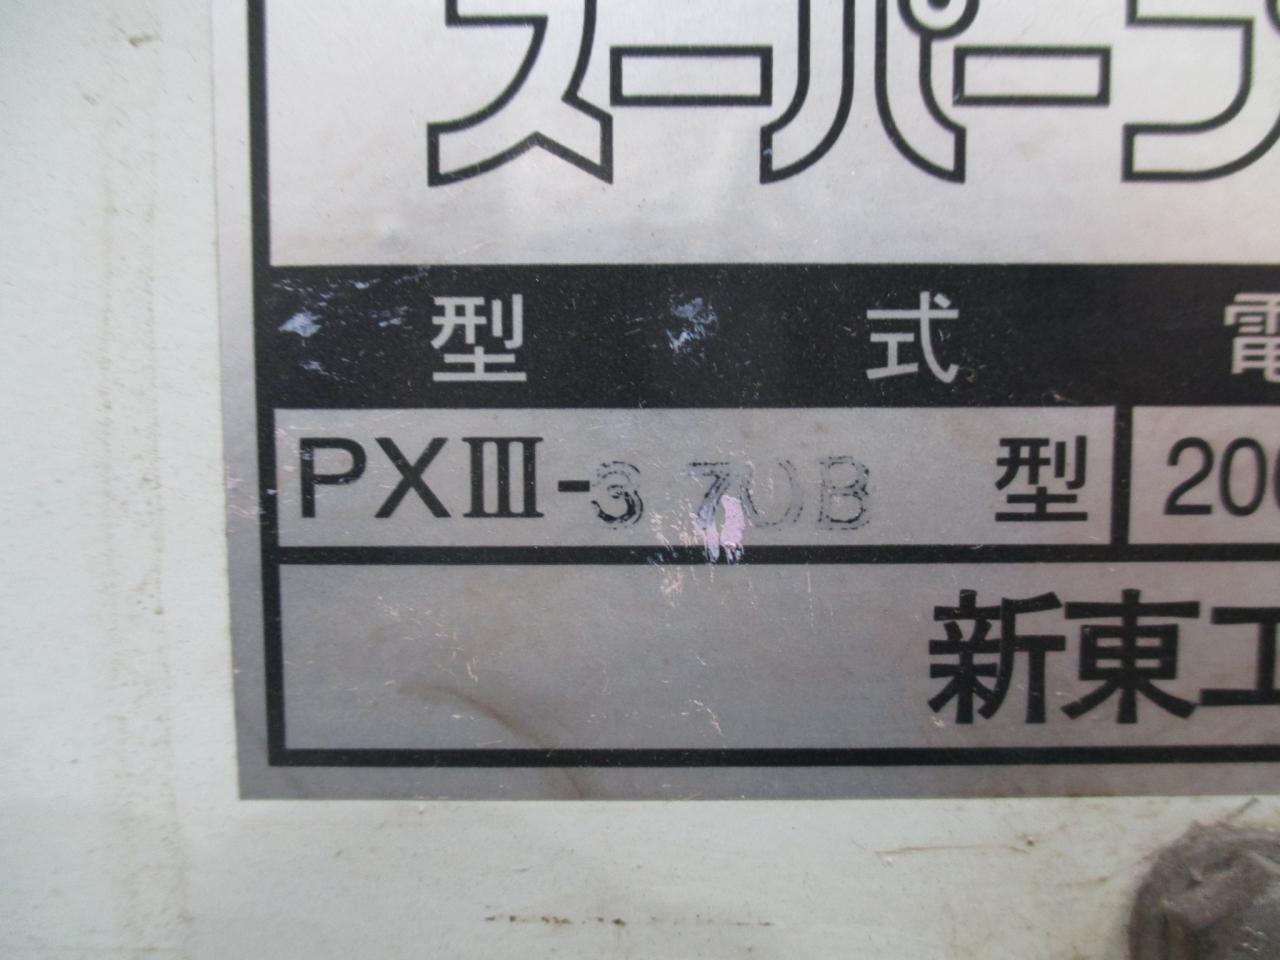 PXⅢ-37OB銘板アップ